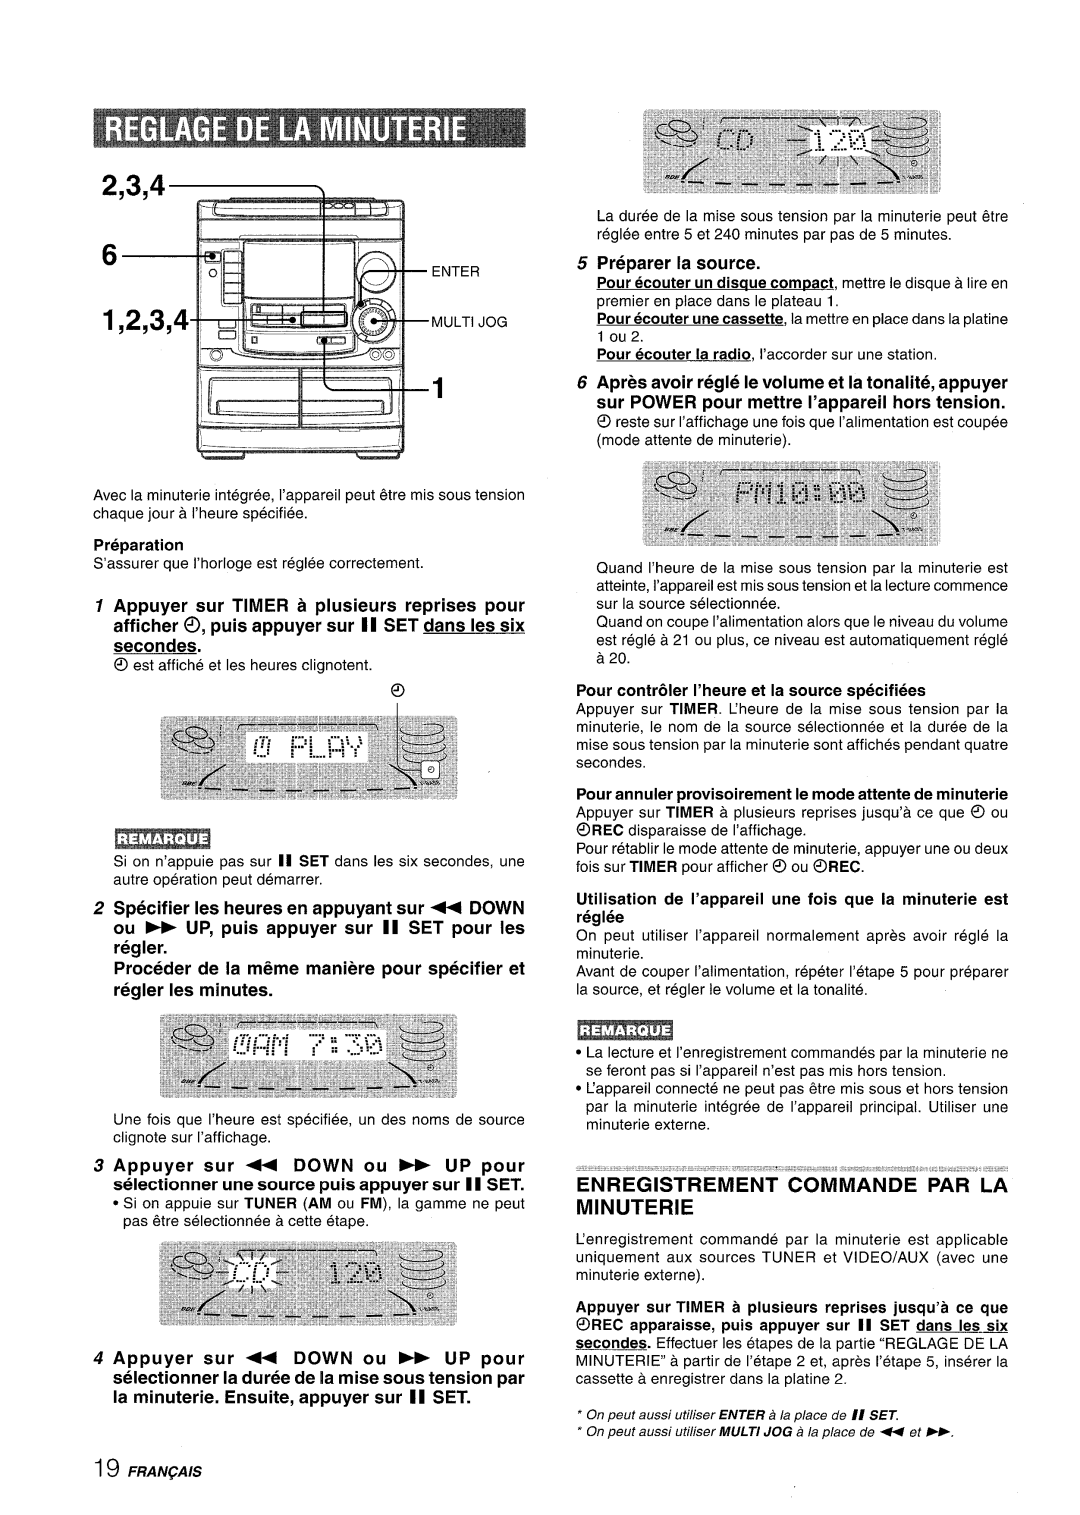 Aiwa NSX-A508 manual 2,3,4 P, Specifier Ies heures en appuyant sur - DOWN, ou - UP, puis appuyer sur II SET pour Ies regler 